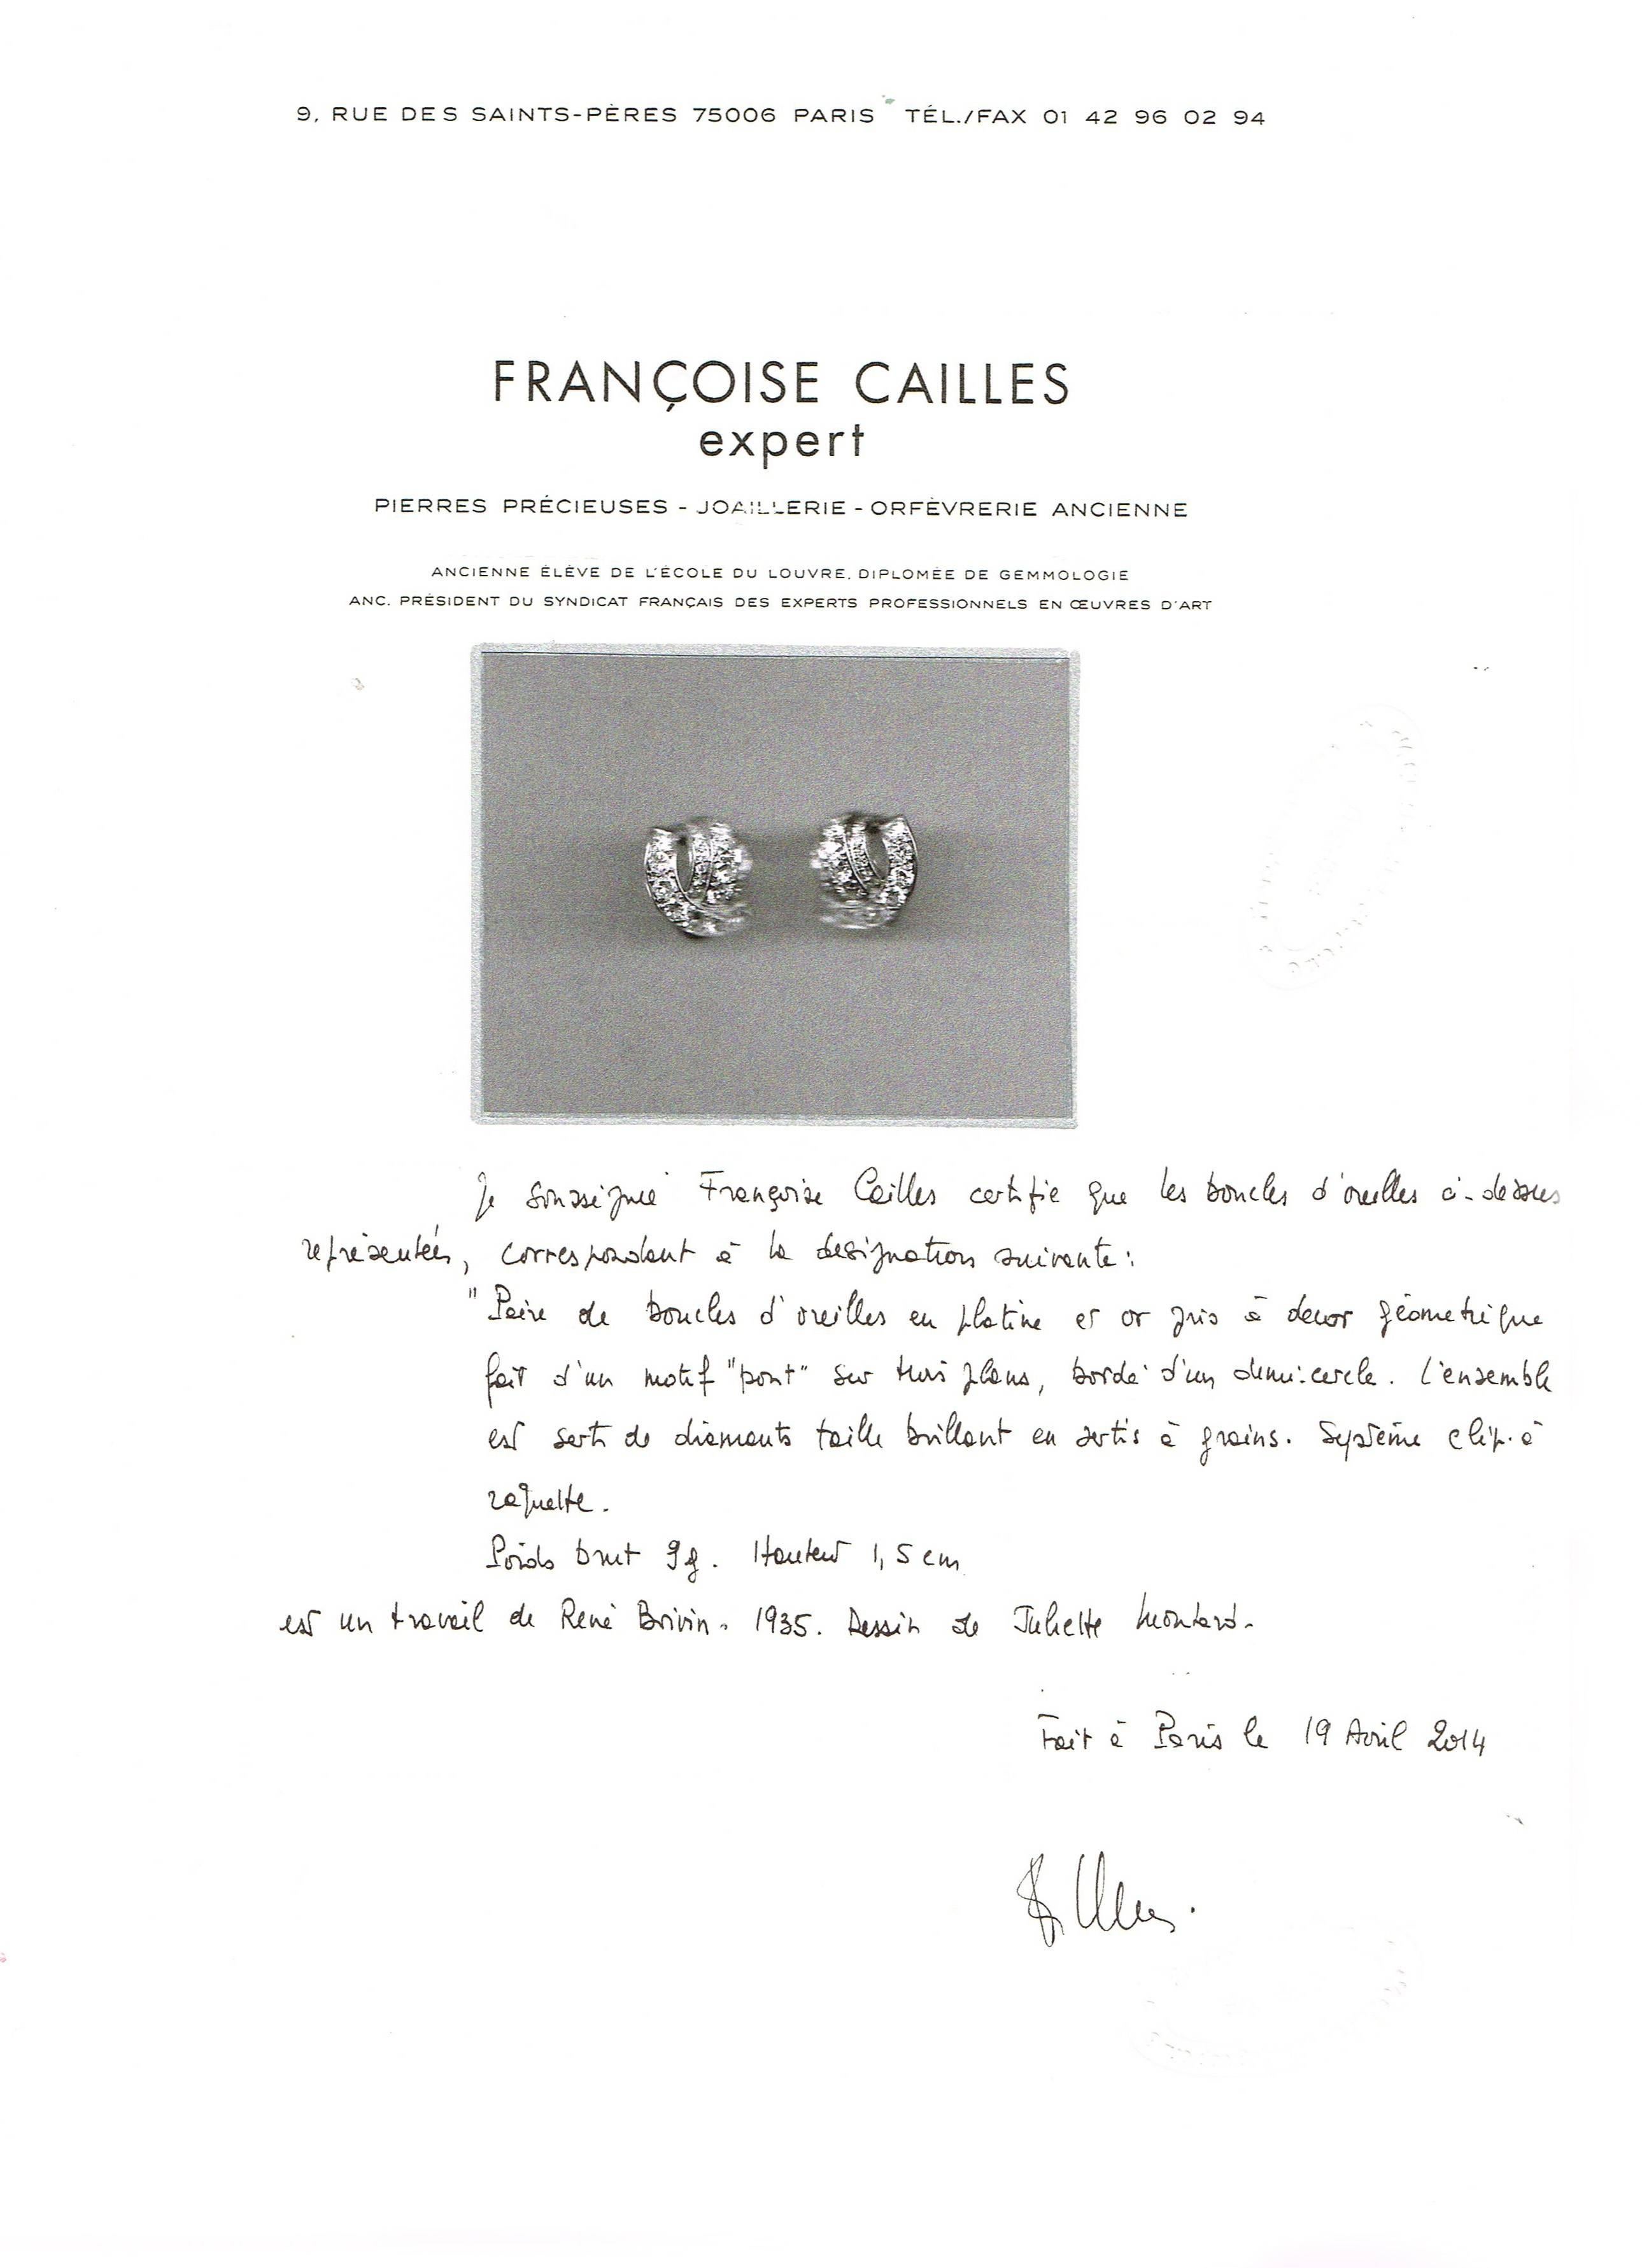 1935 Rene Boivin Diamond Platinum Earrings For Sale 1